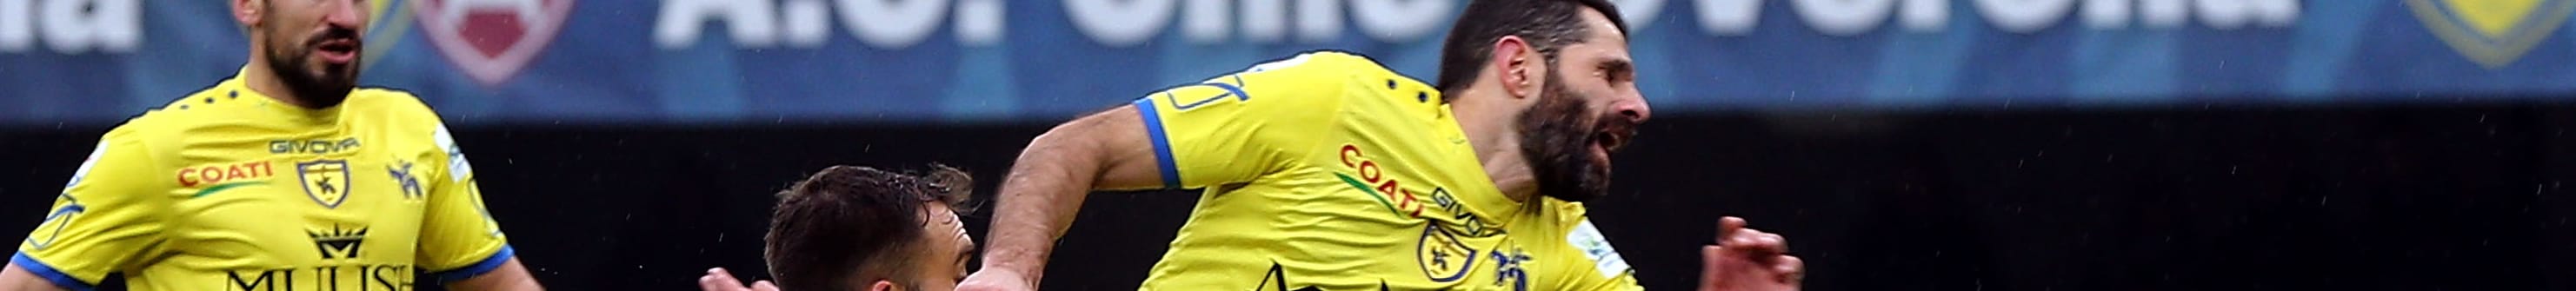 Chievo-Sampdoria, Pellissier saluta il Bentegodi